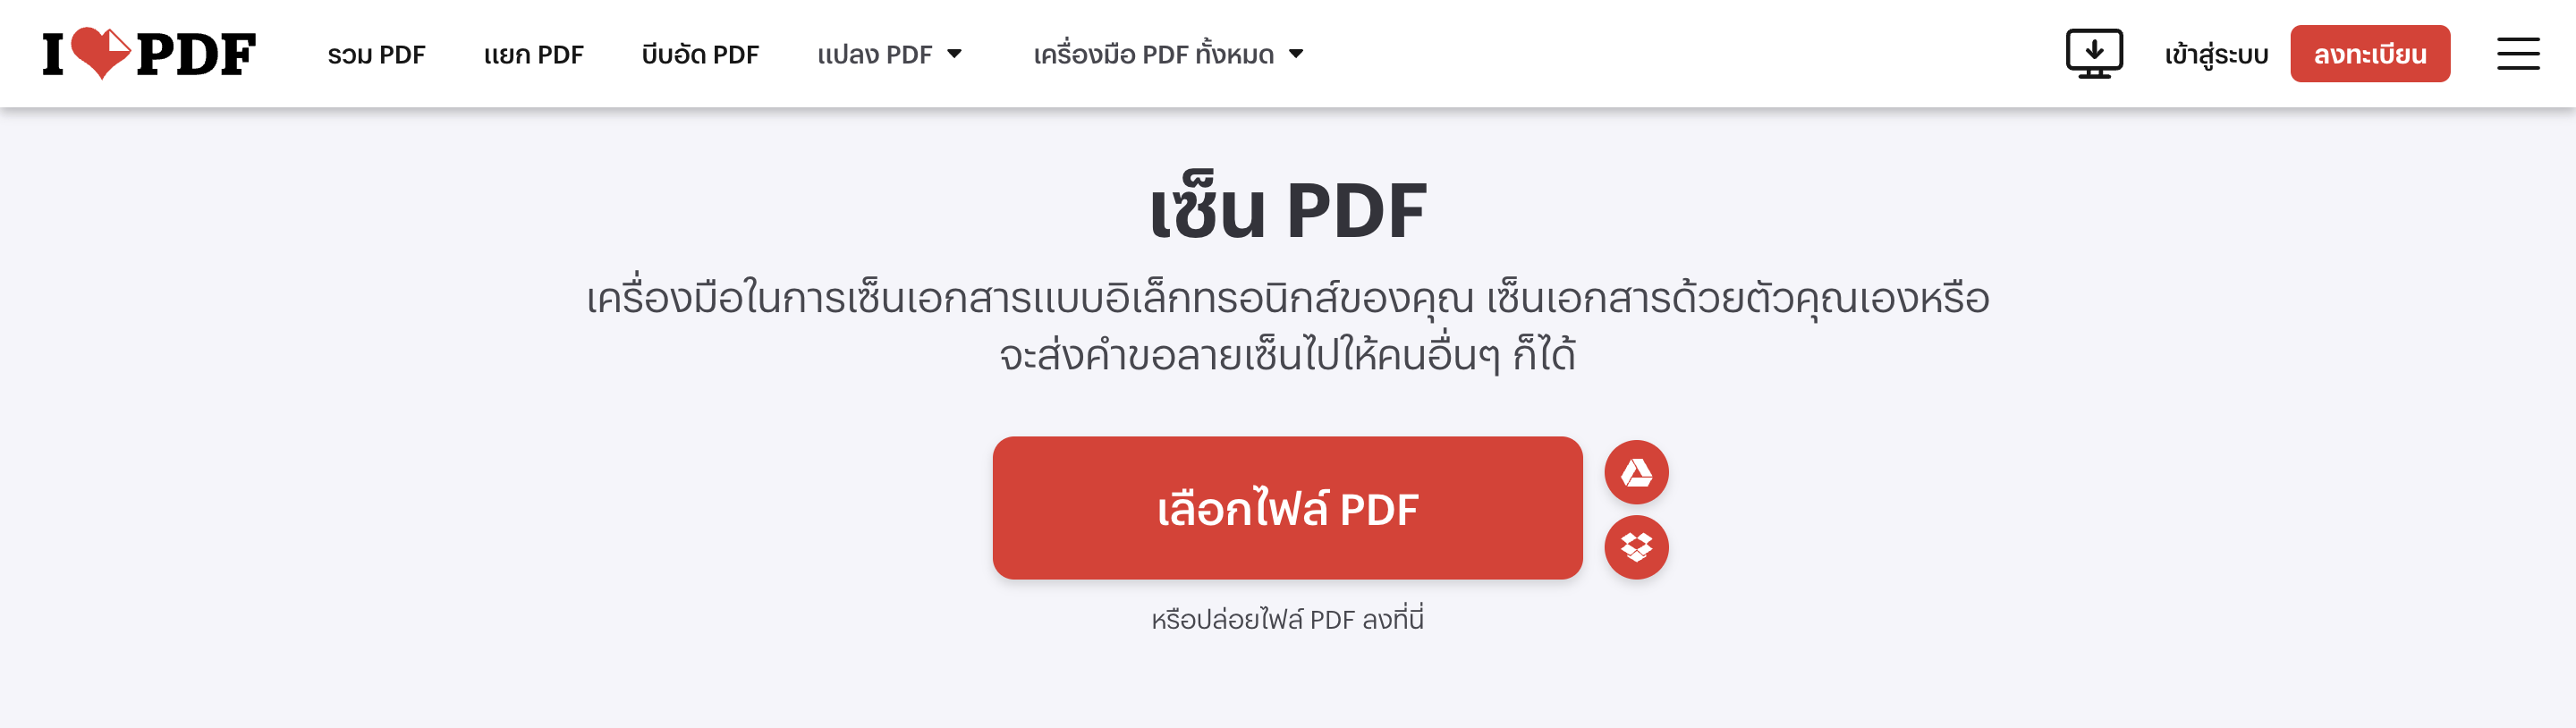 เลือกไฟล์ PDF ที่ต้องการใส่ลายเซ็นลงไป